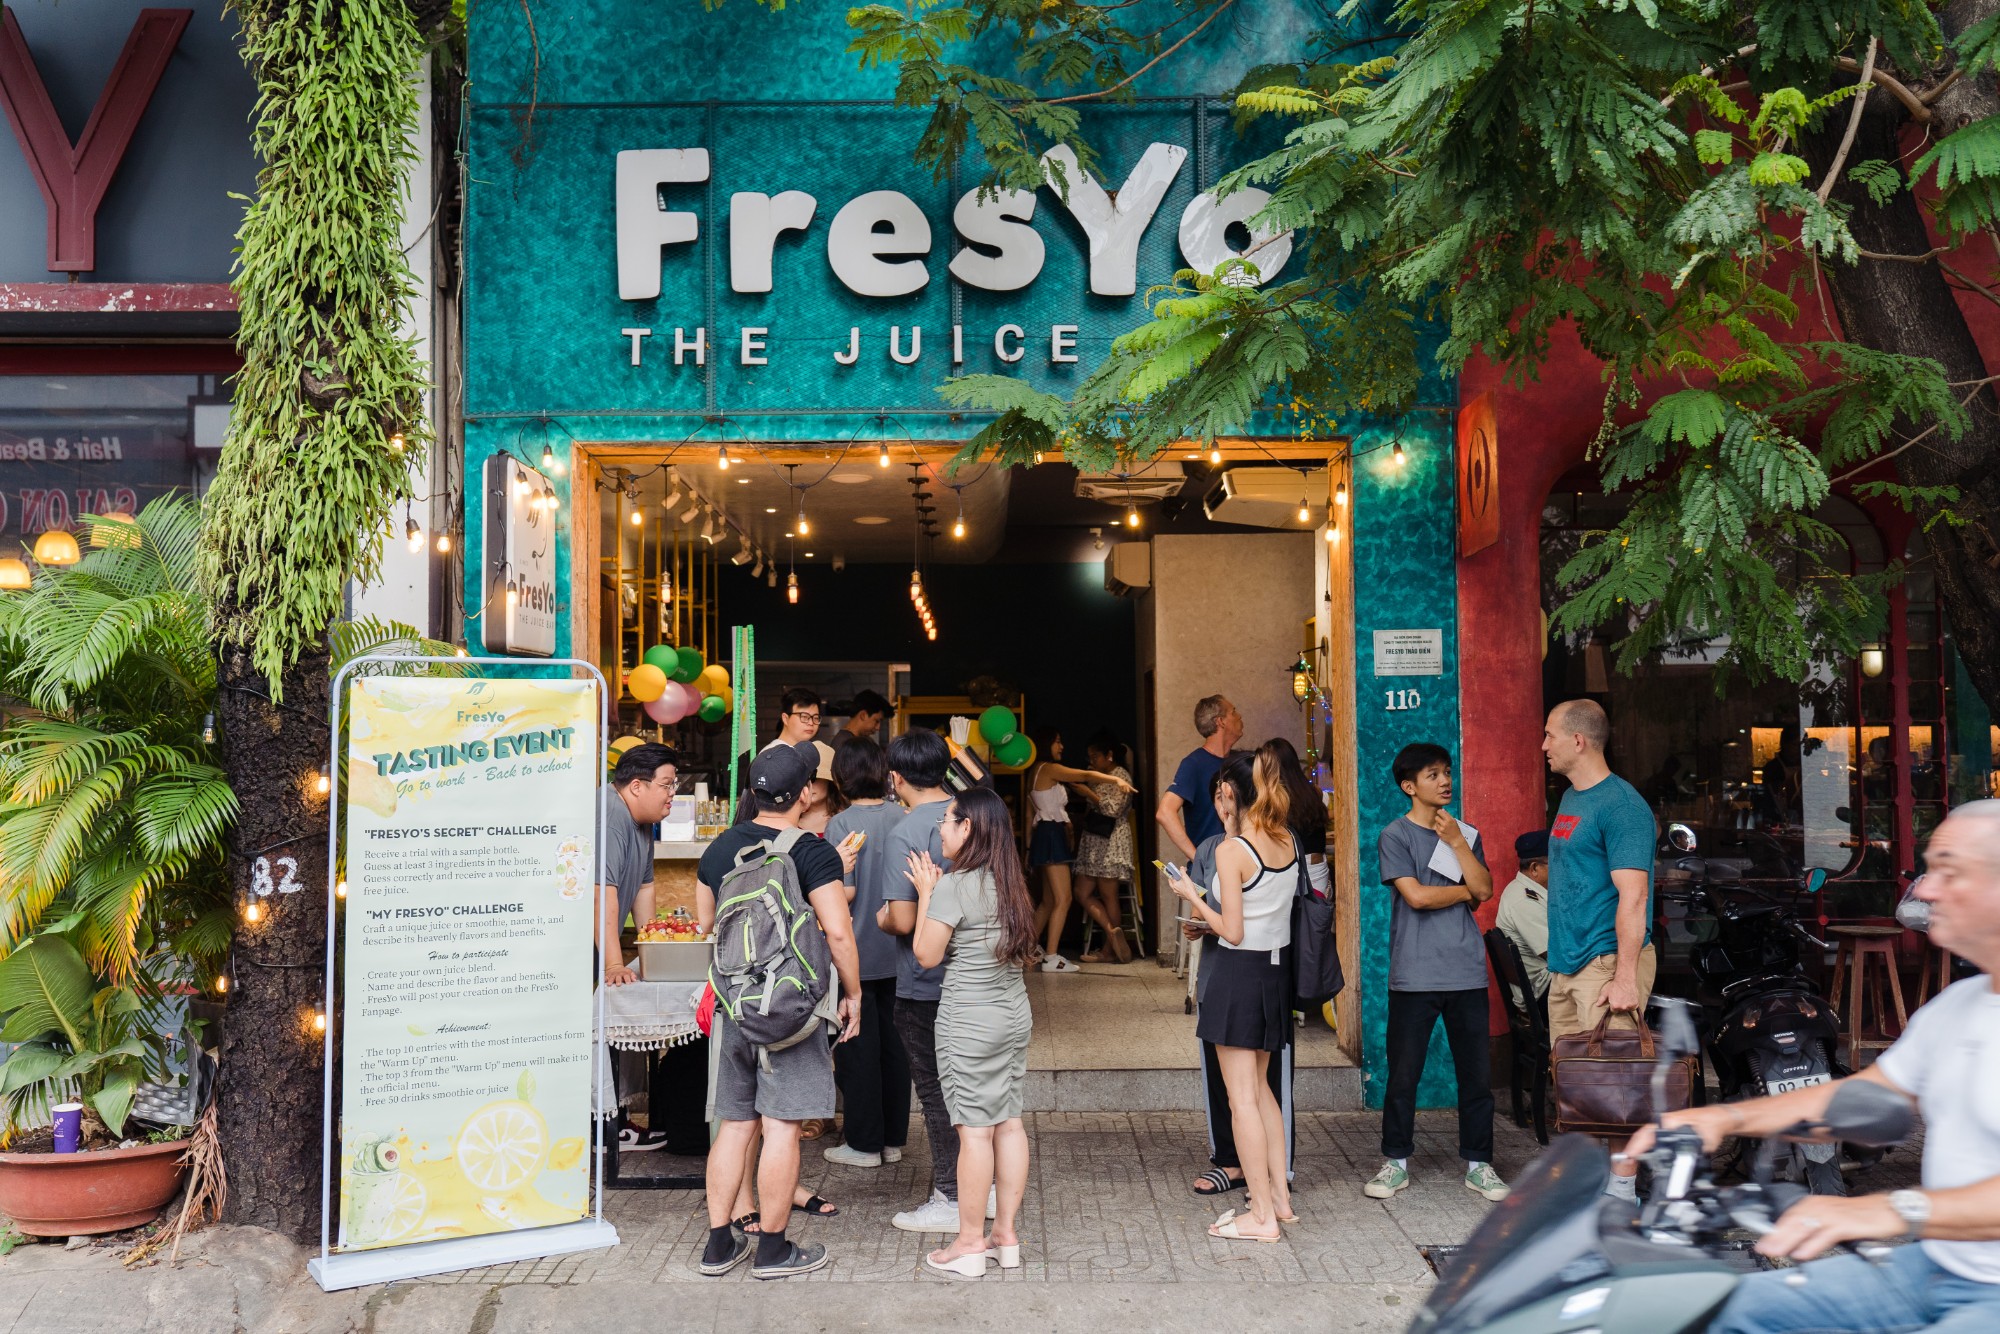 Sự kiện đã thu hút hơn 200 dân cư khu vực Thảo Điền và khách hàng thân thiết của FresYo